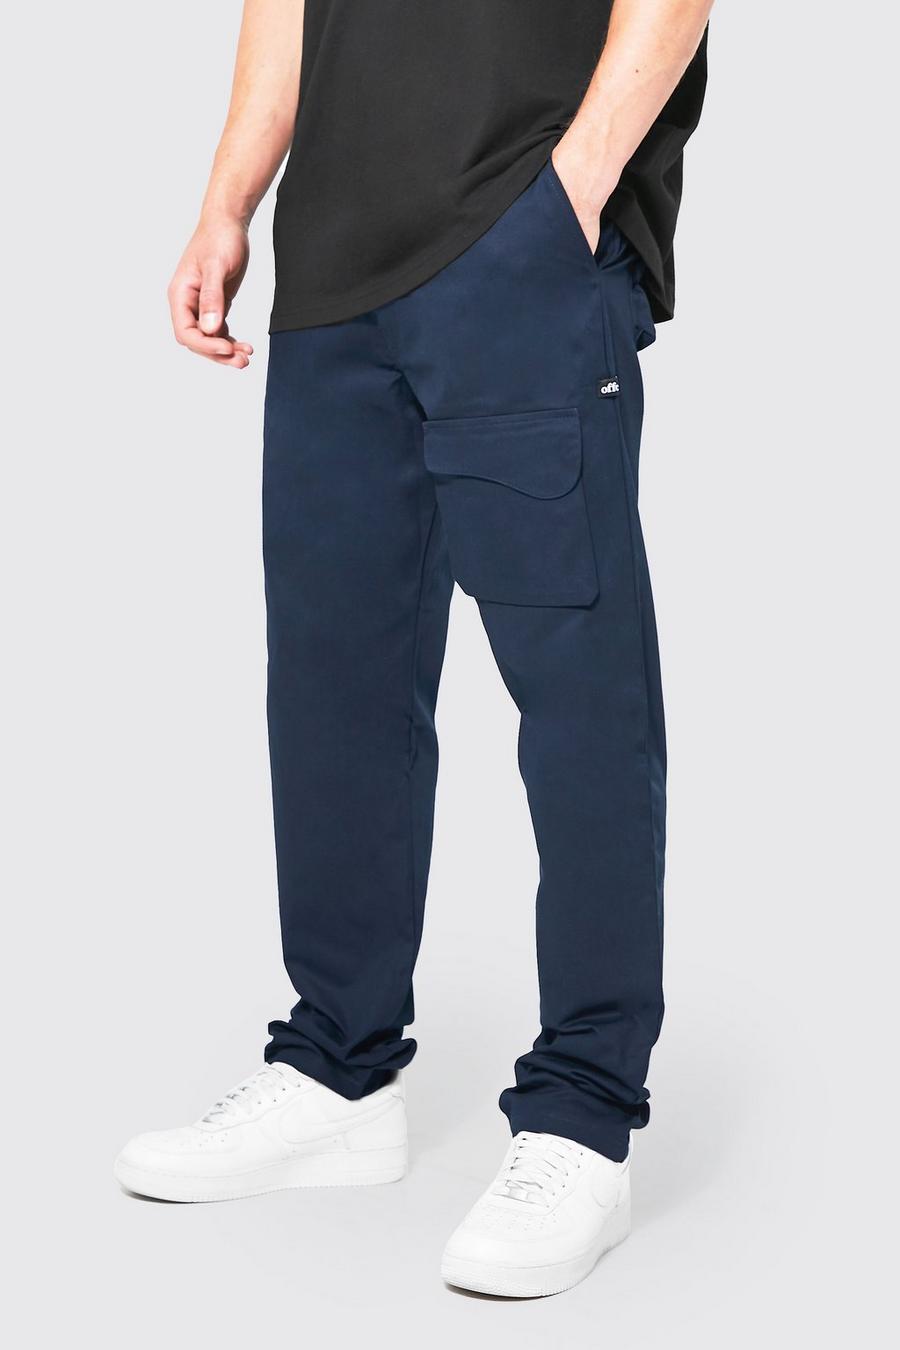 Tall lockere Hose mit Taschen, Navy